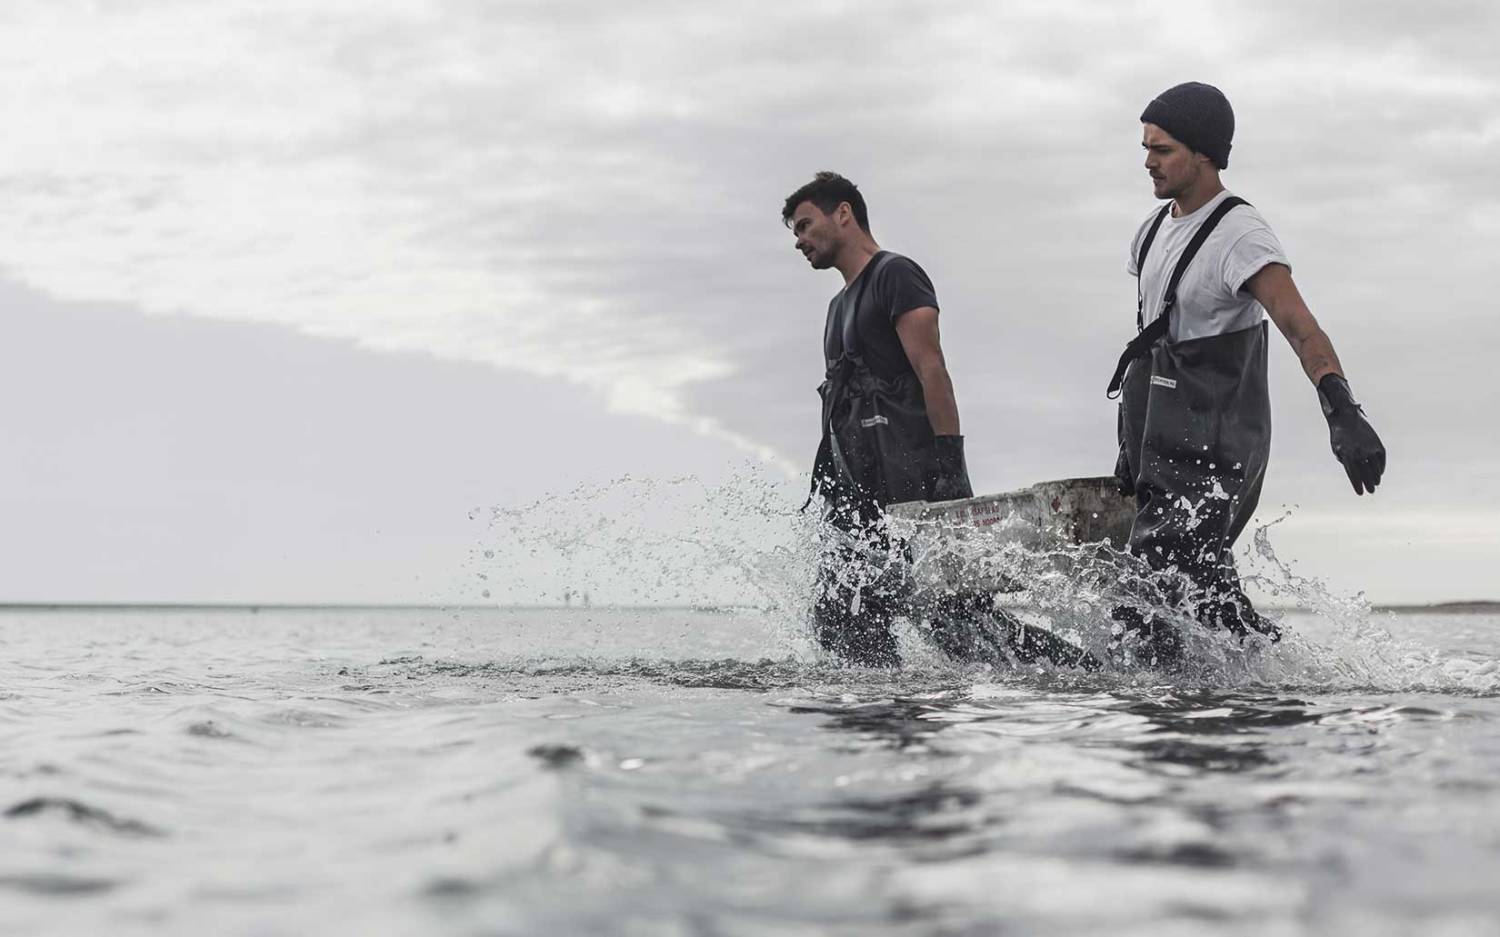 Joost und Marco sammeln ihre Austern in der niederländischen Nordsee / ©AusterRegion